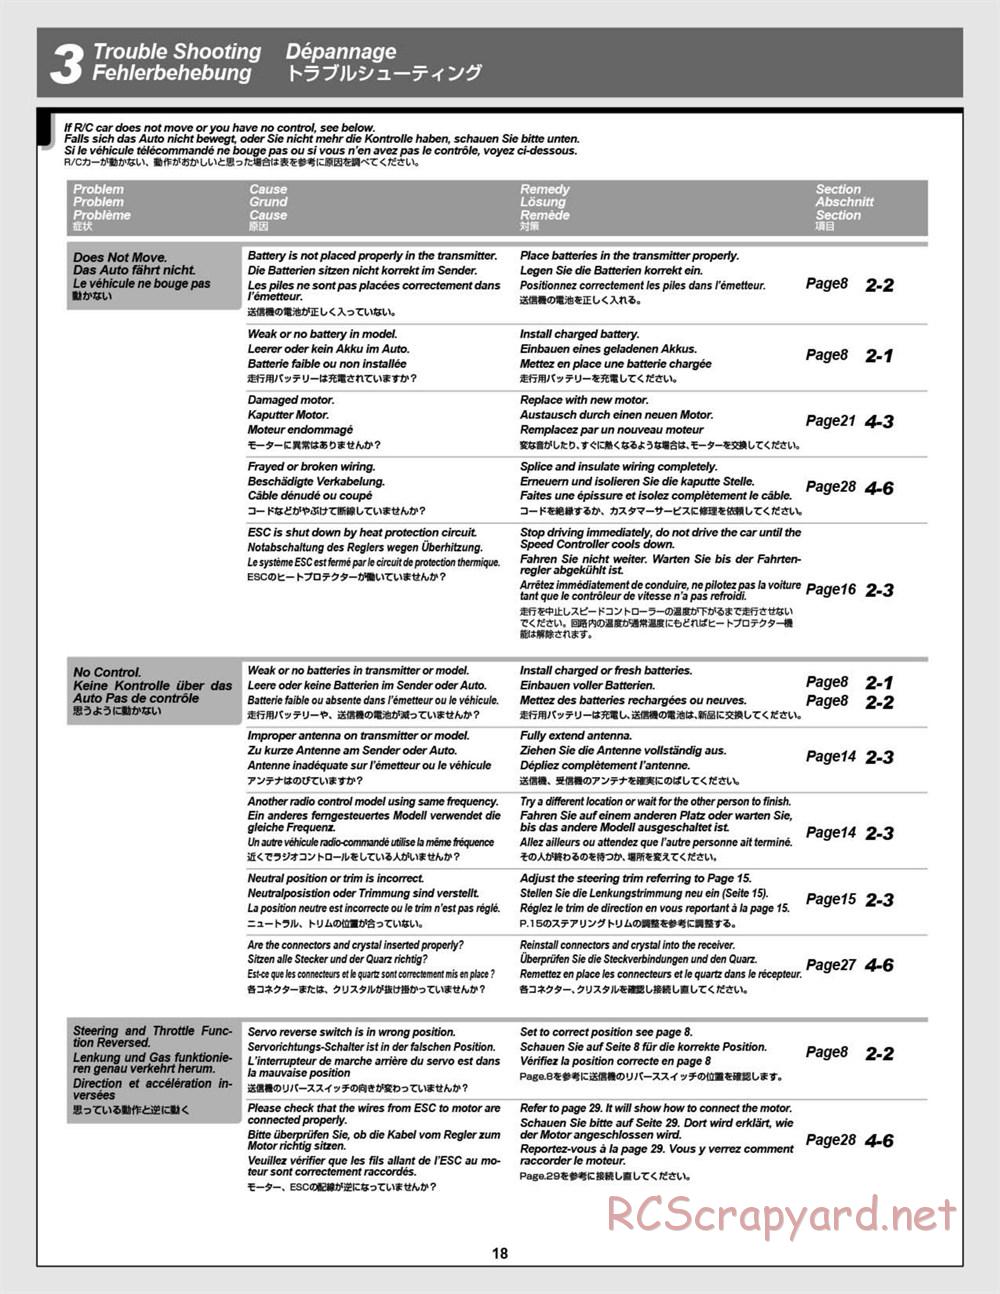 HPI - Vorza Flux HP - Manual - Page 18